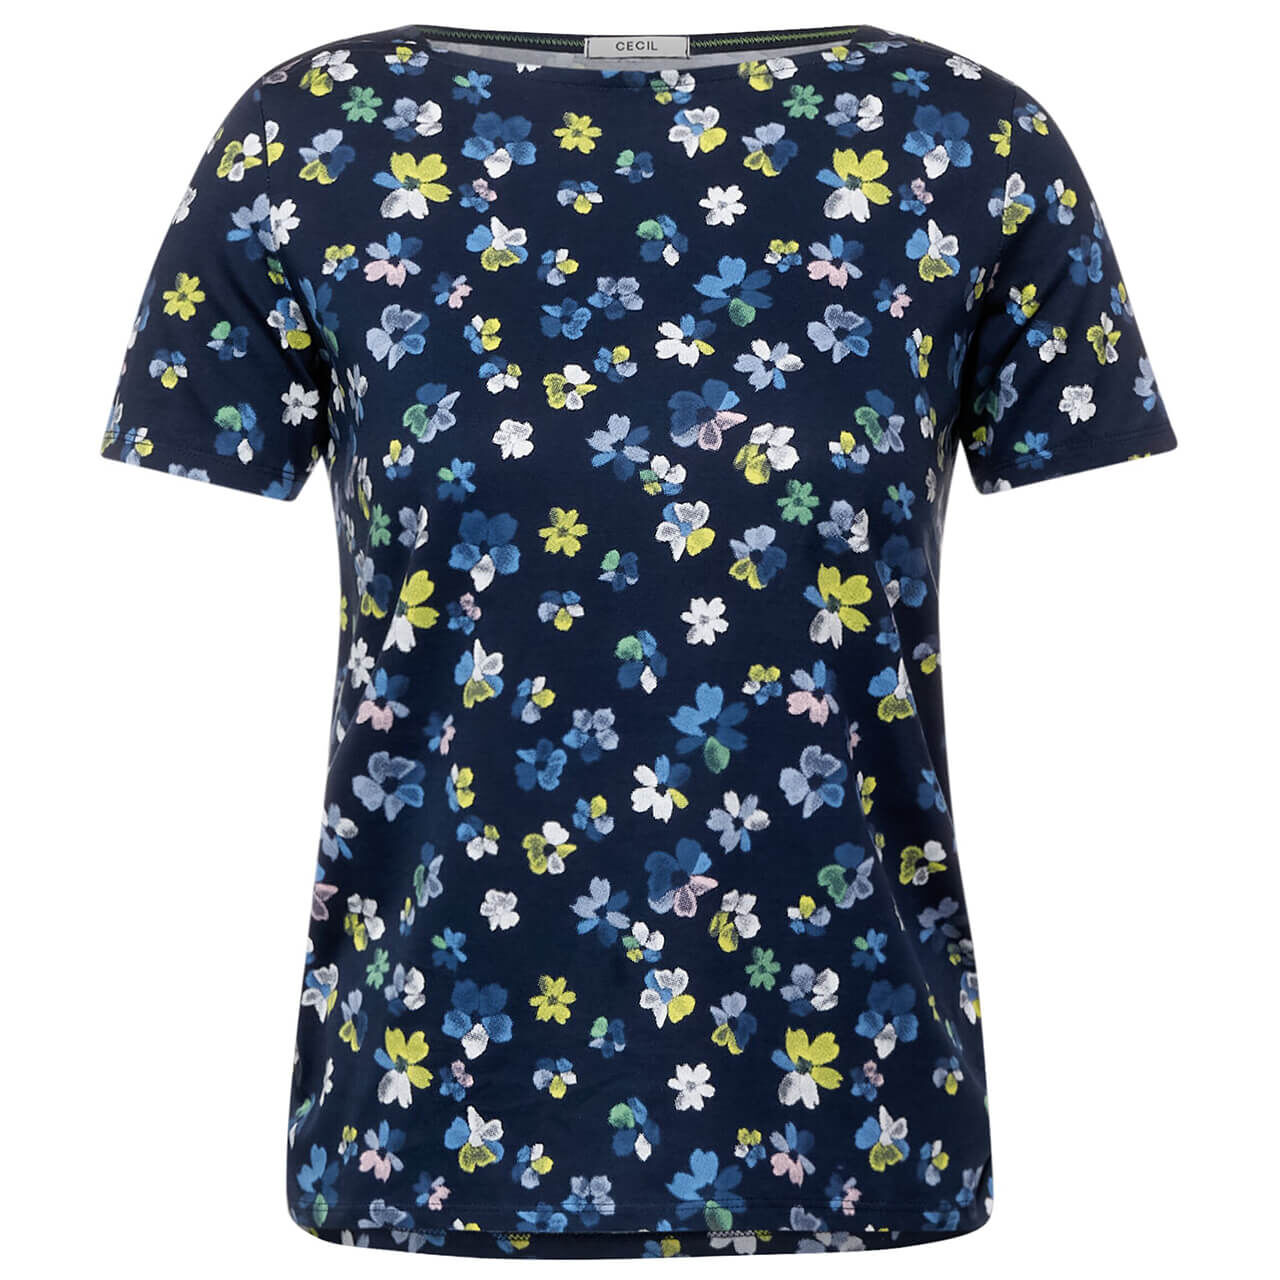 Cecil Flower T-Shirt für Damen in Dunkelblau mit Print, FarbNr.: 33727